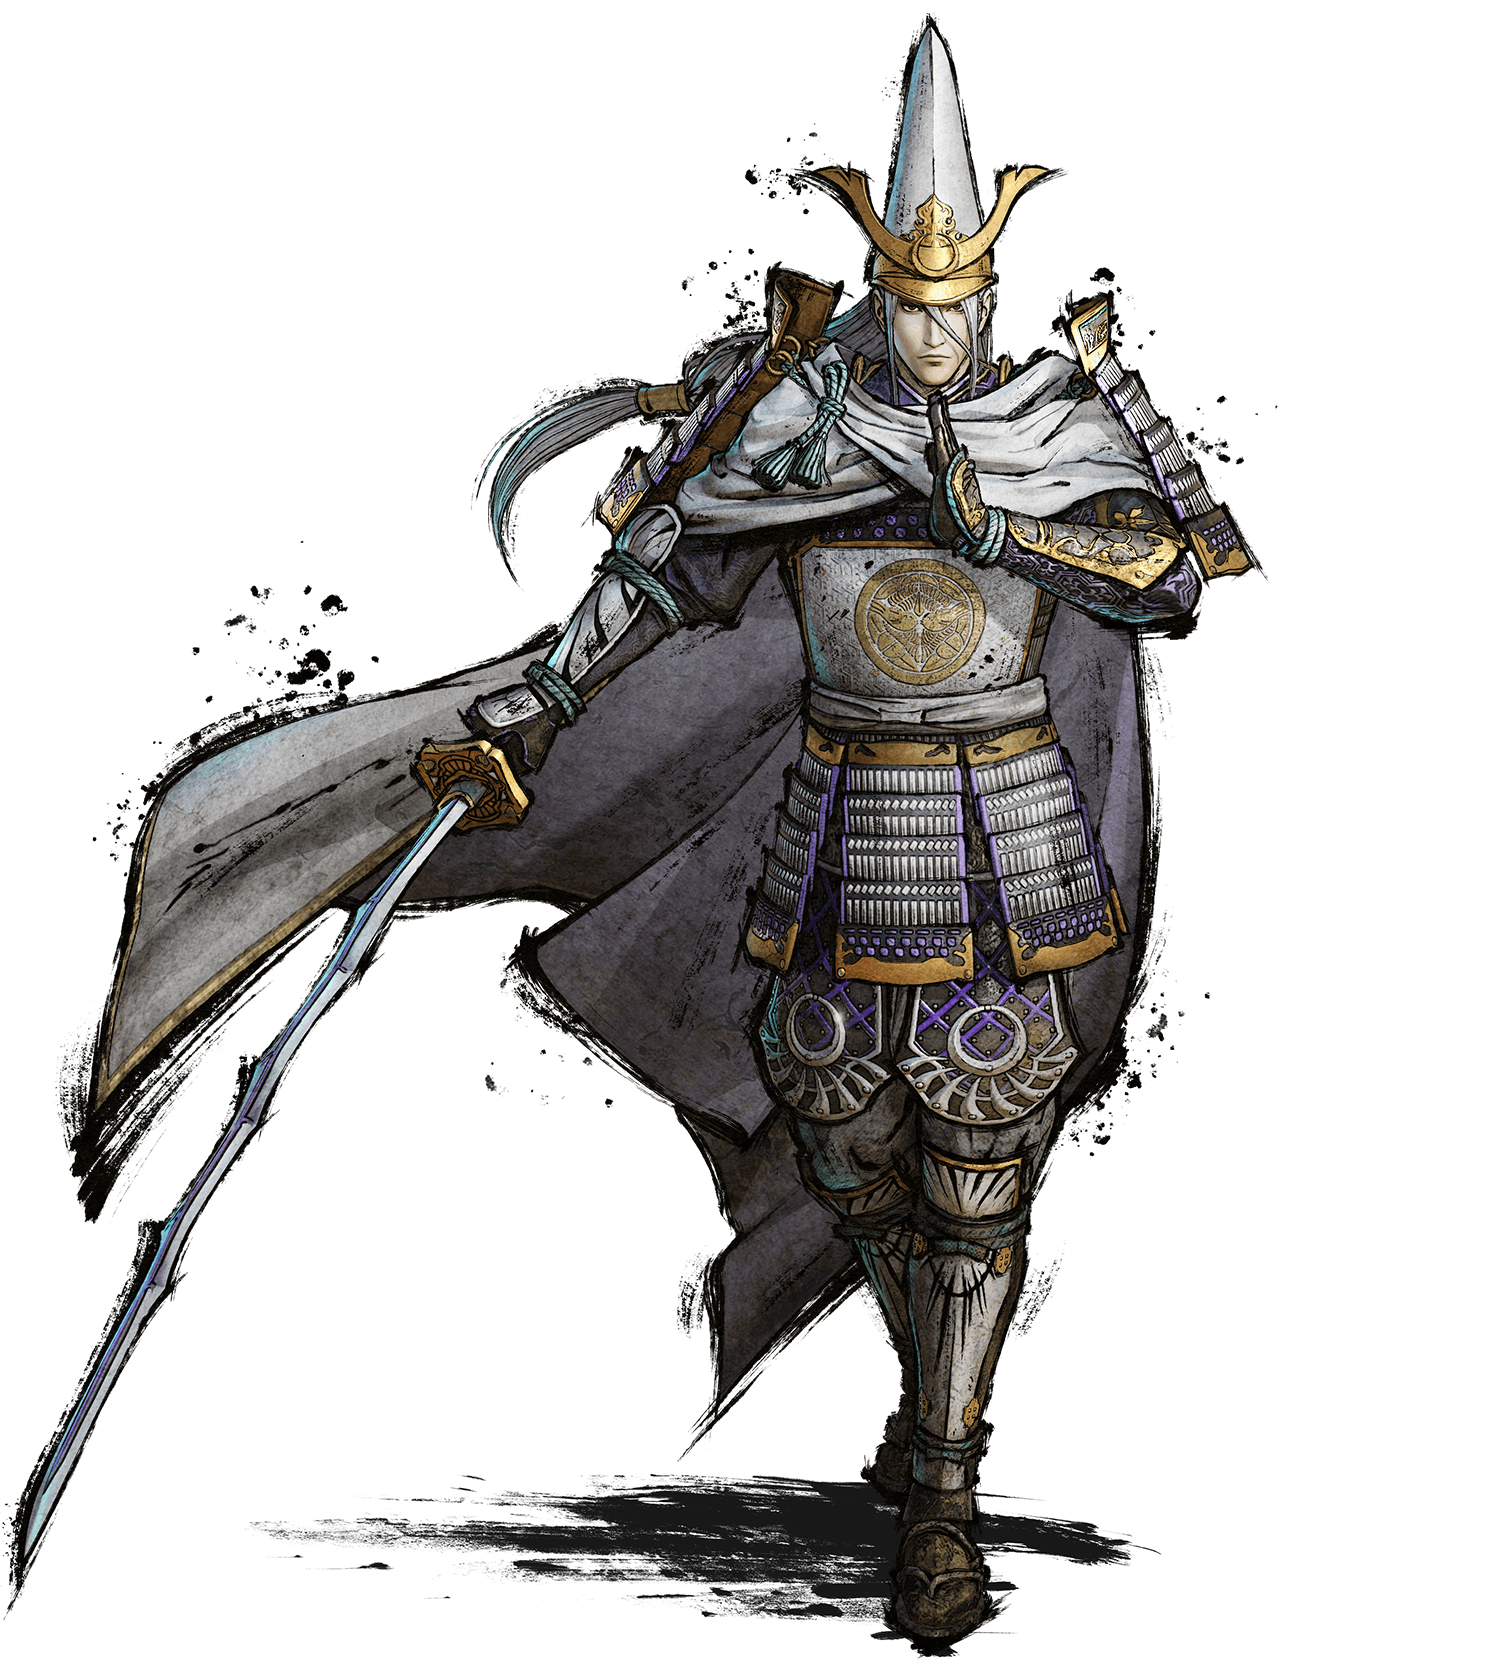 Samurai Warriors 5 Details Shingen Takeda Kenshin Uesugi Motonari Mori Hisahide Matsunaga And Takakage Kobayakawa Third Official Live Stream Set For April 23 Gematsu